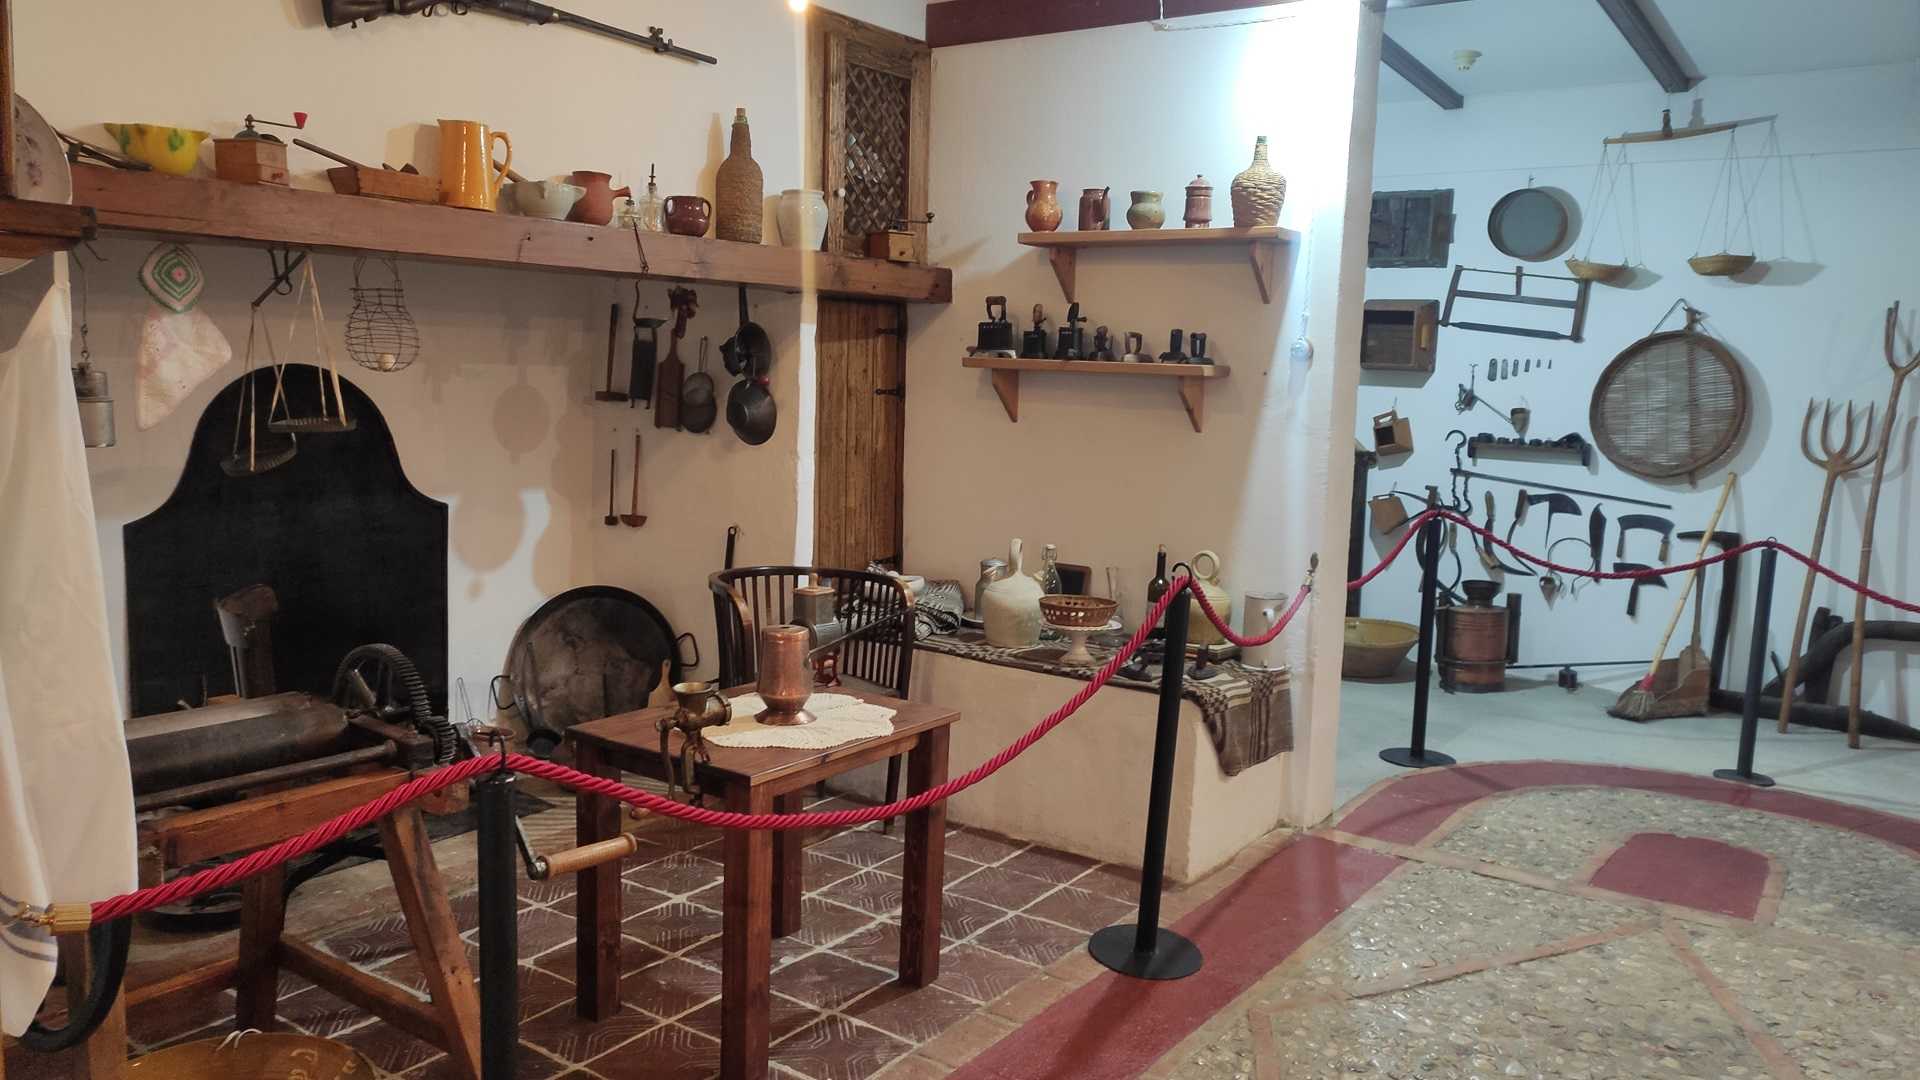 Museo Etnológico de Enguera